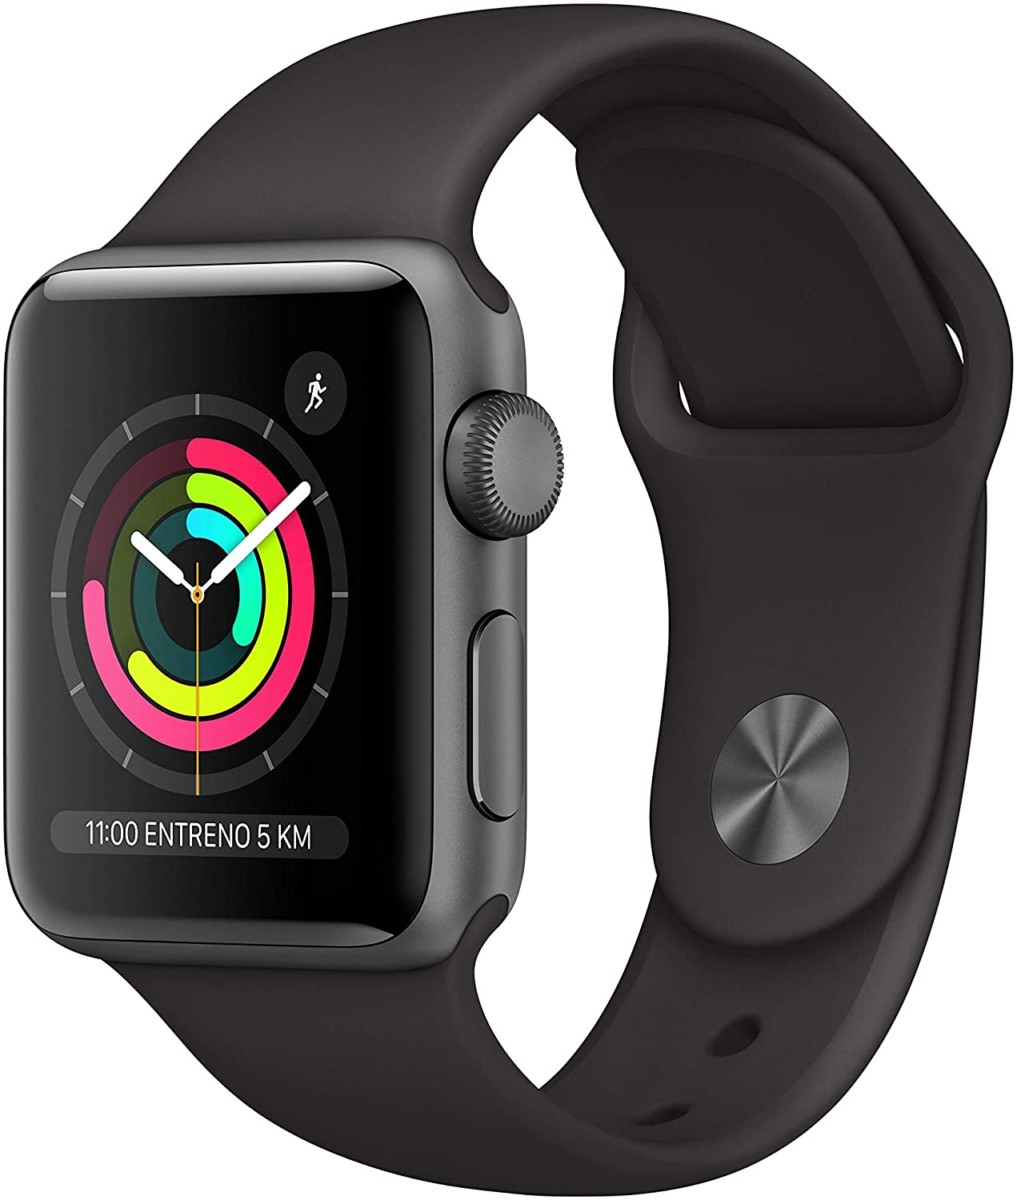 Apple Watch Series 3, ottimo sconto su Amazon per la variante nera